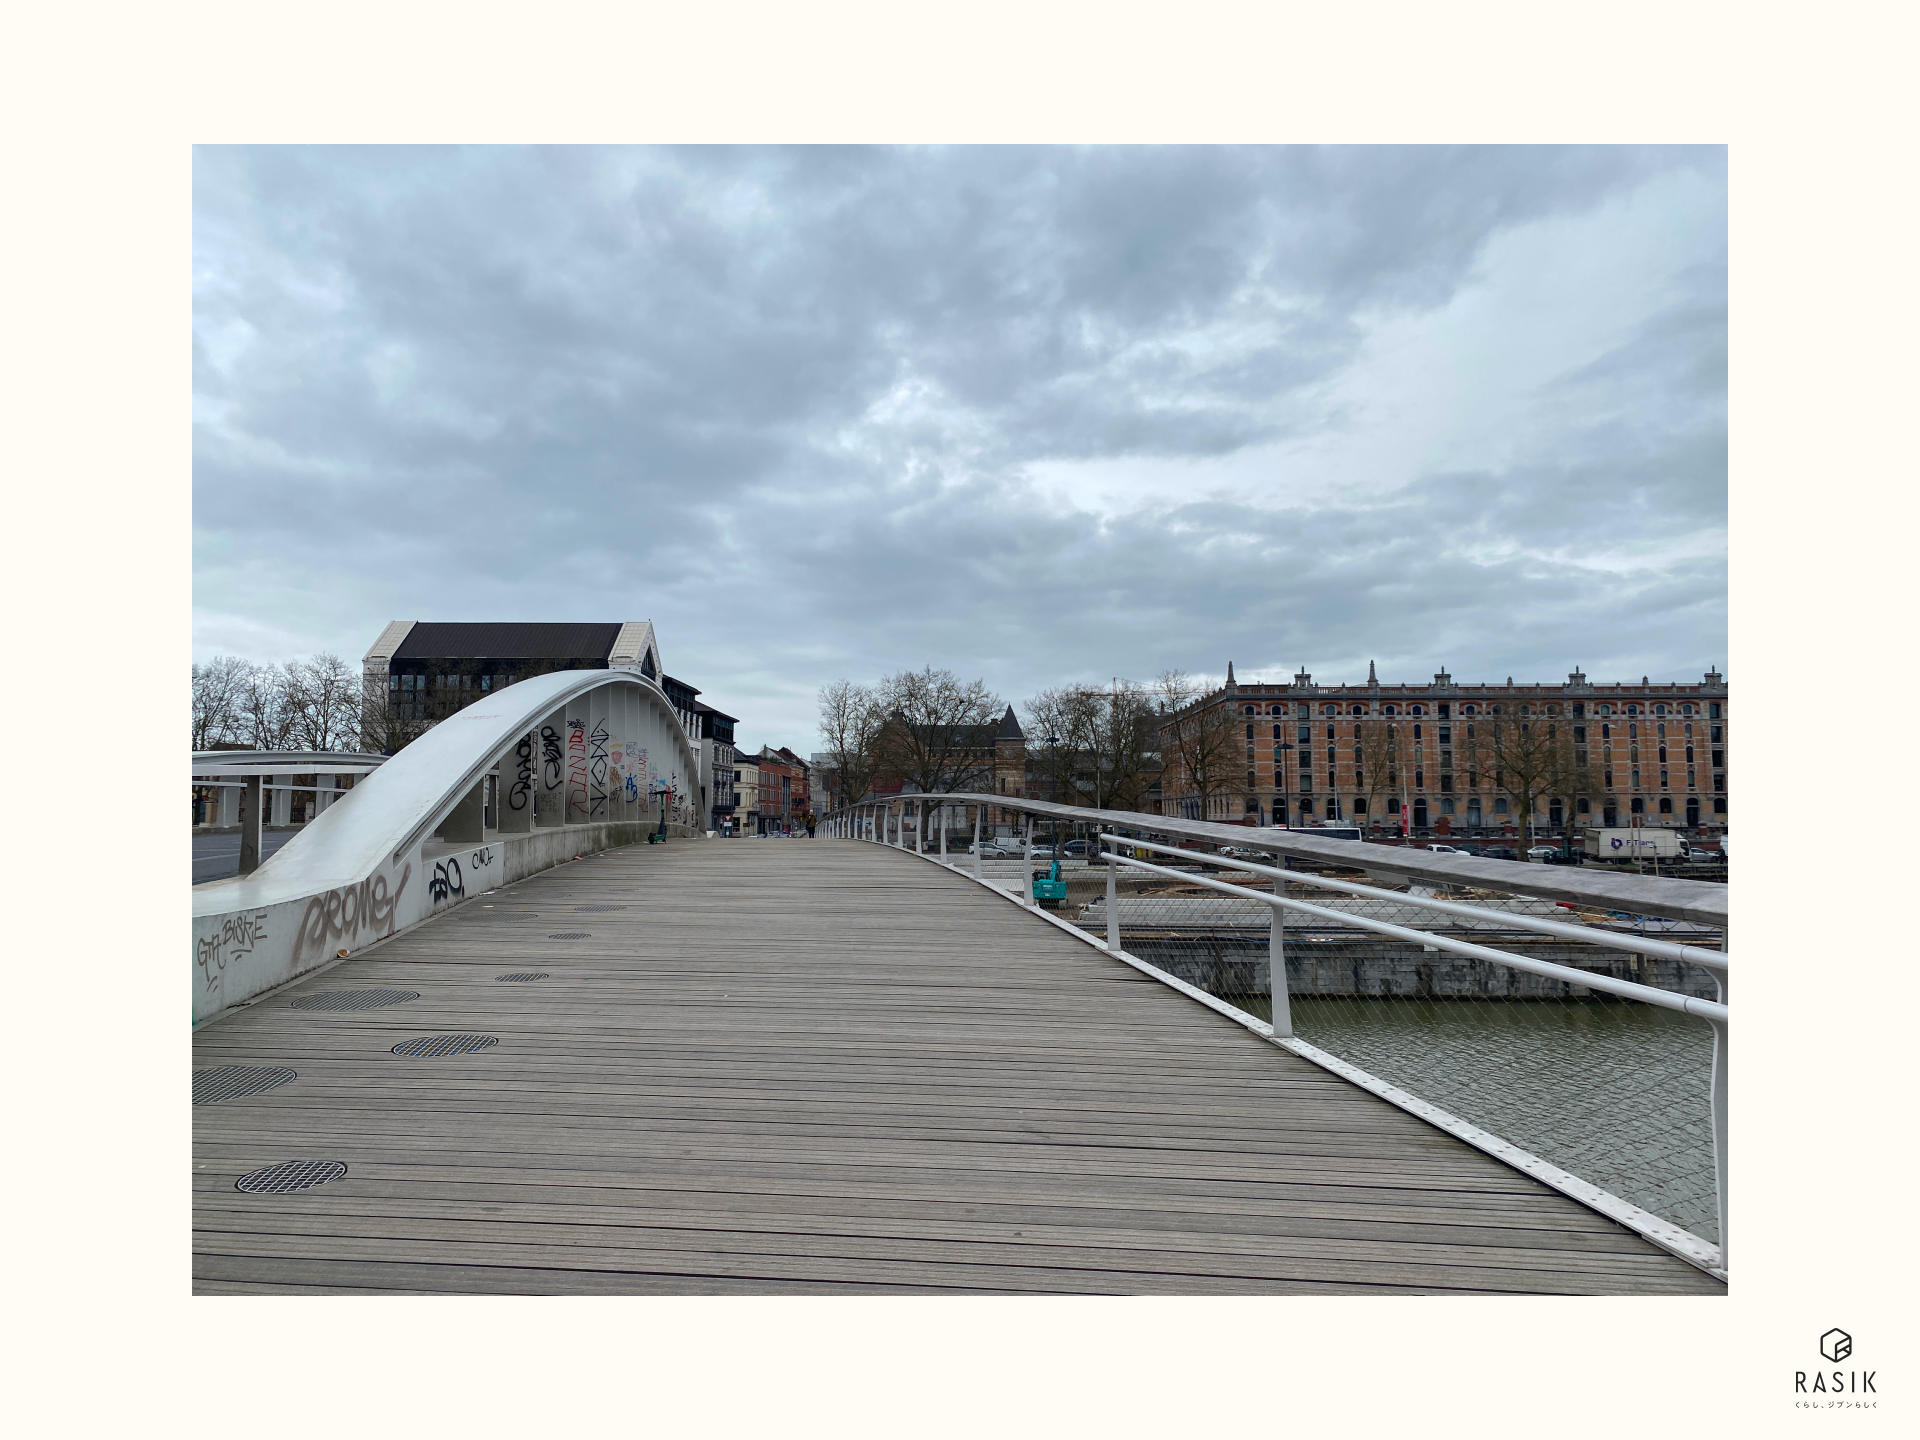 ブリュッセルデザインマーケット会場付近の橋の画像